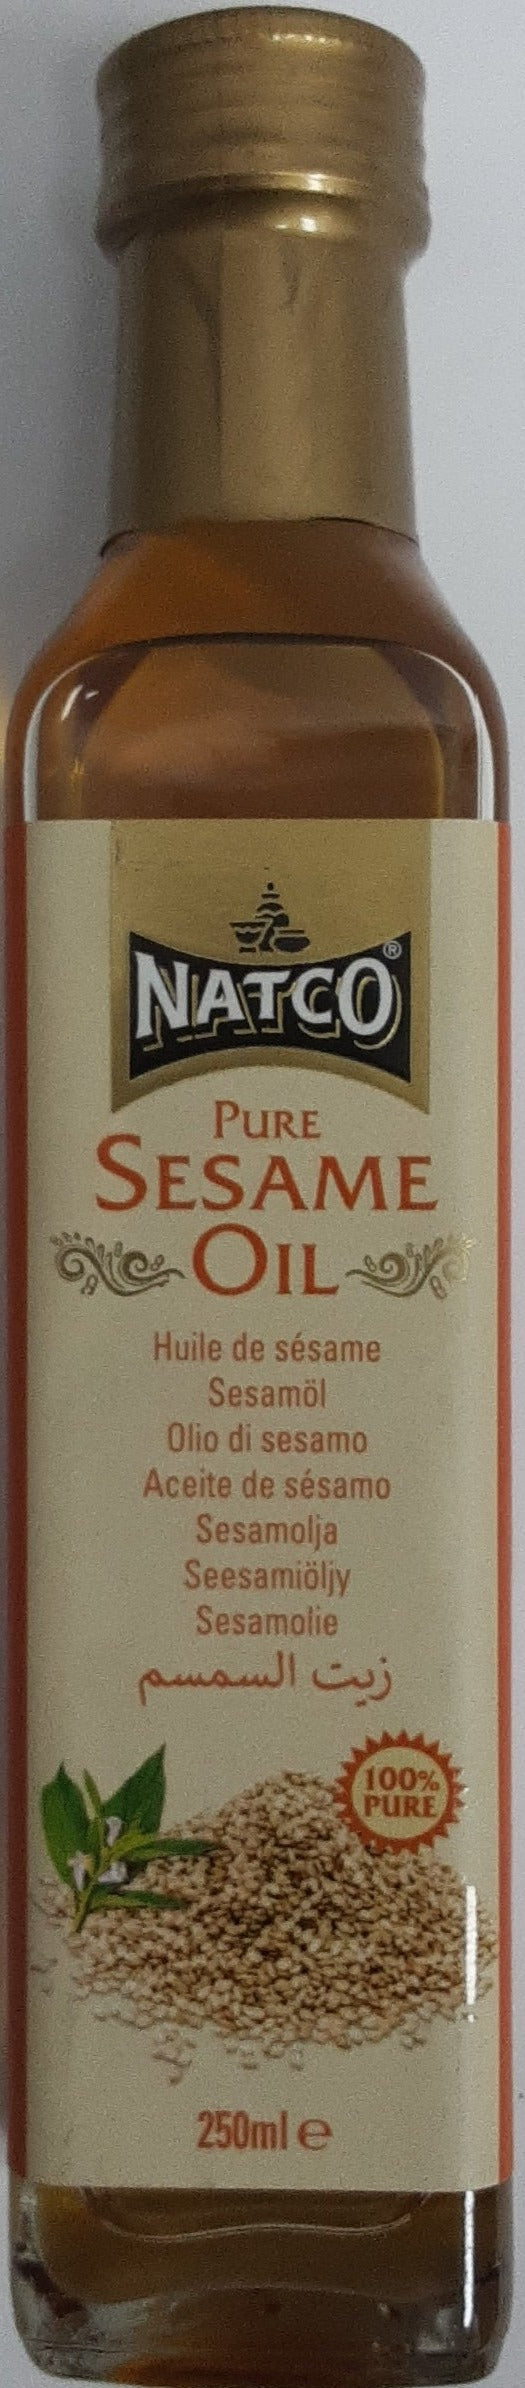 Natco Oil Pure Sesame 250ml